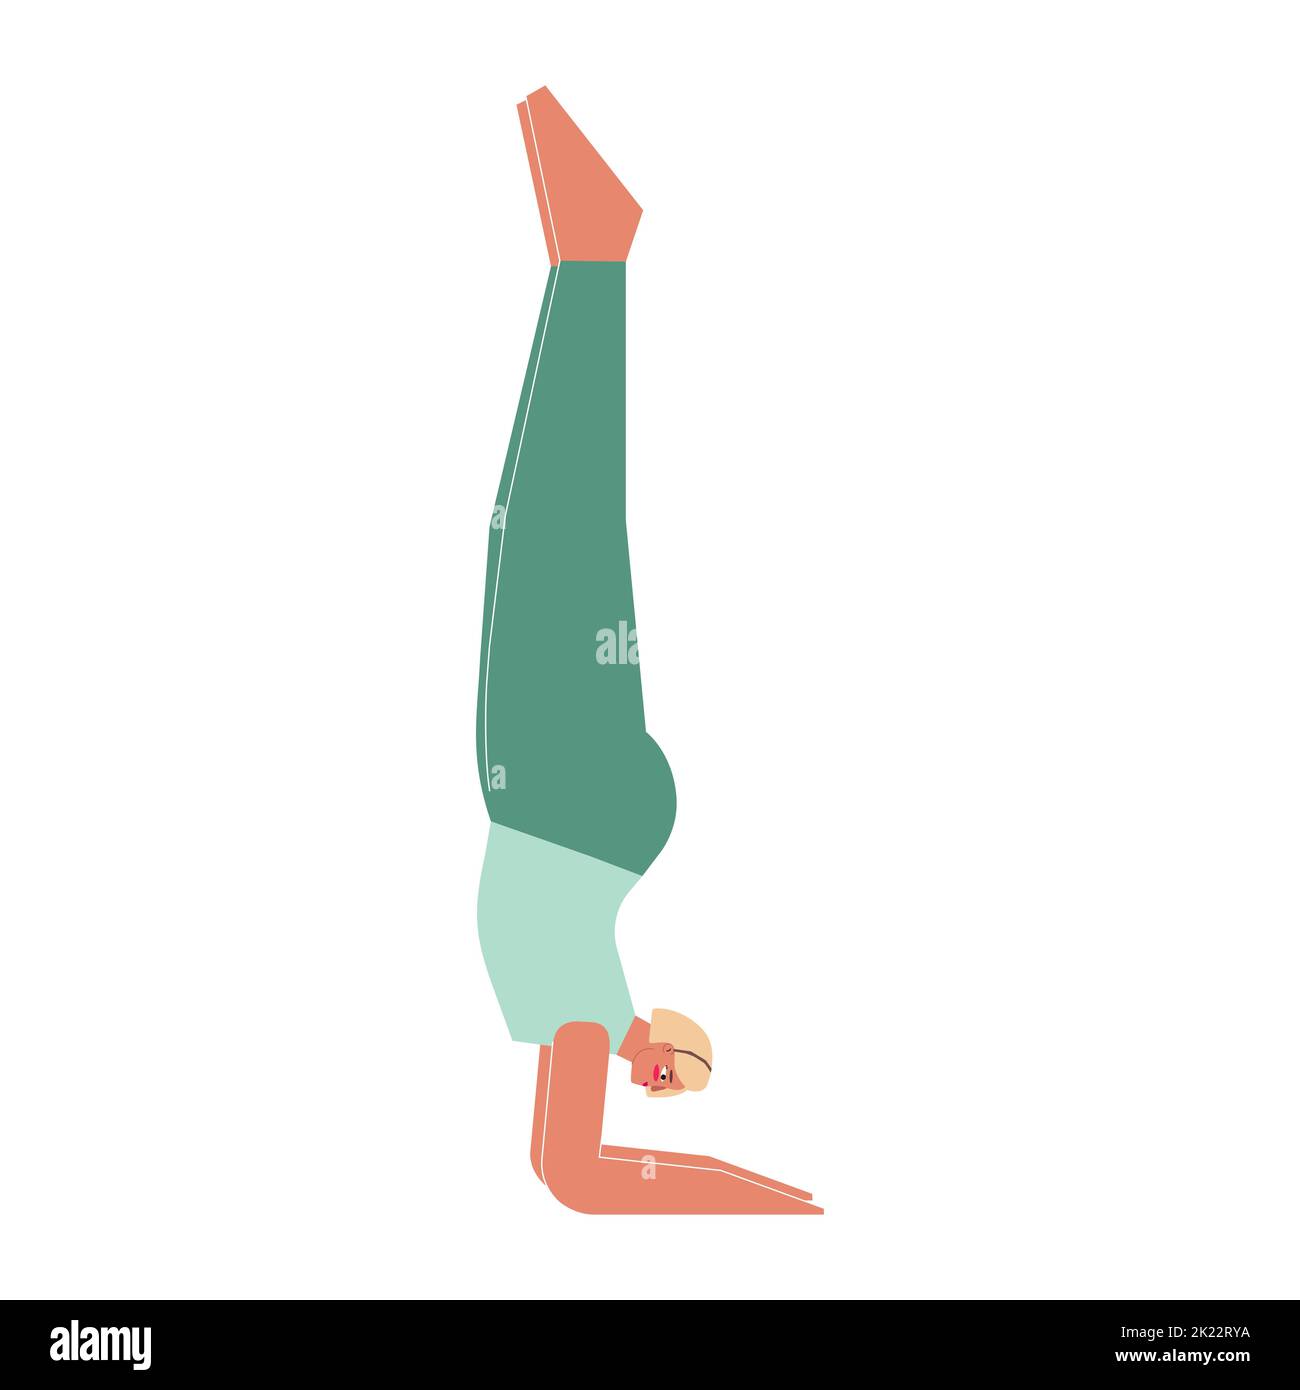 Vektor-isolierte Illustration mit flachem weiblichen Charakter. Die sportliche Frau lernt beim Yoga-Kurs die Haltung. Fitness-Übung - Unterarmständer Stock Vektor